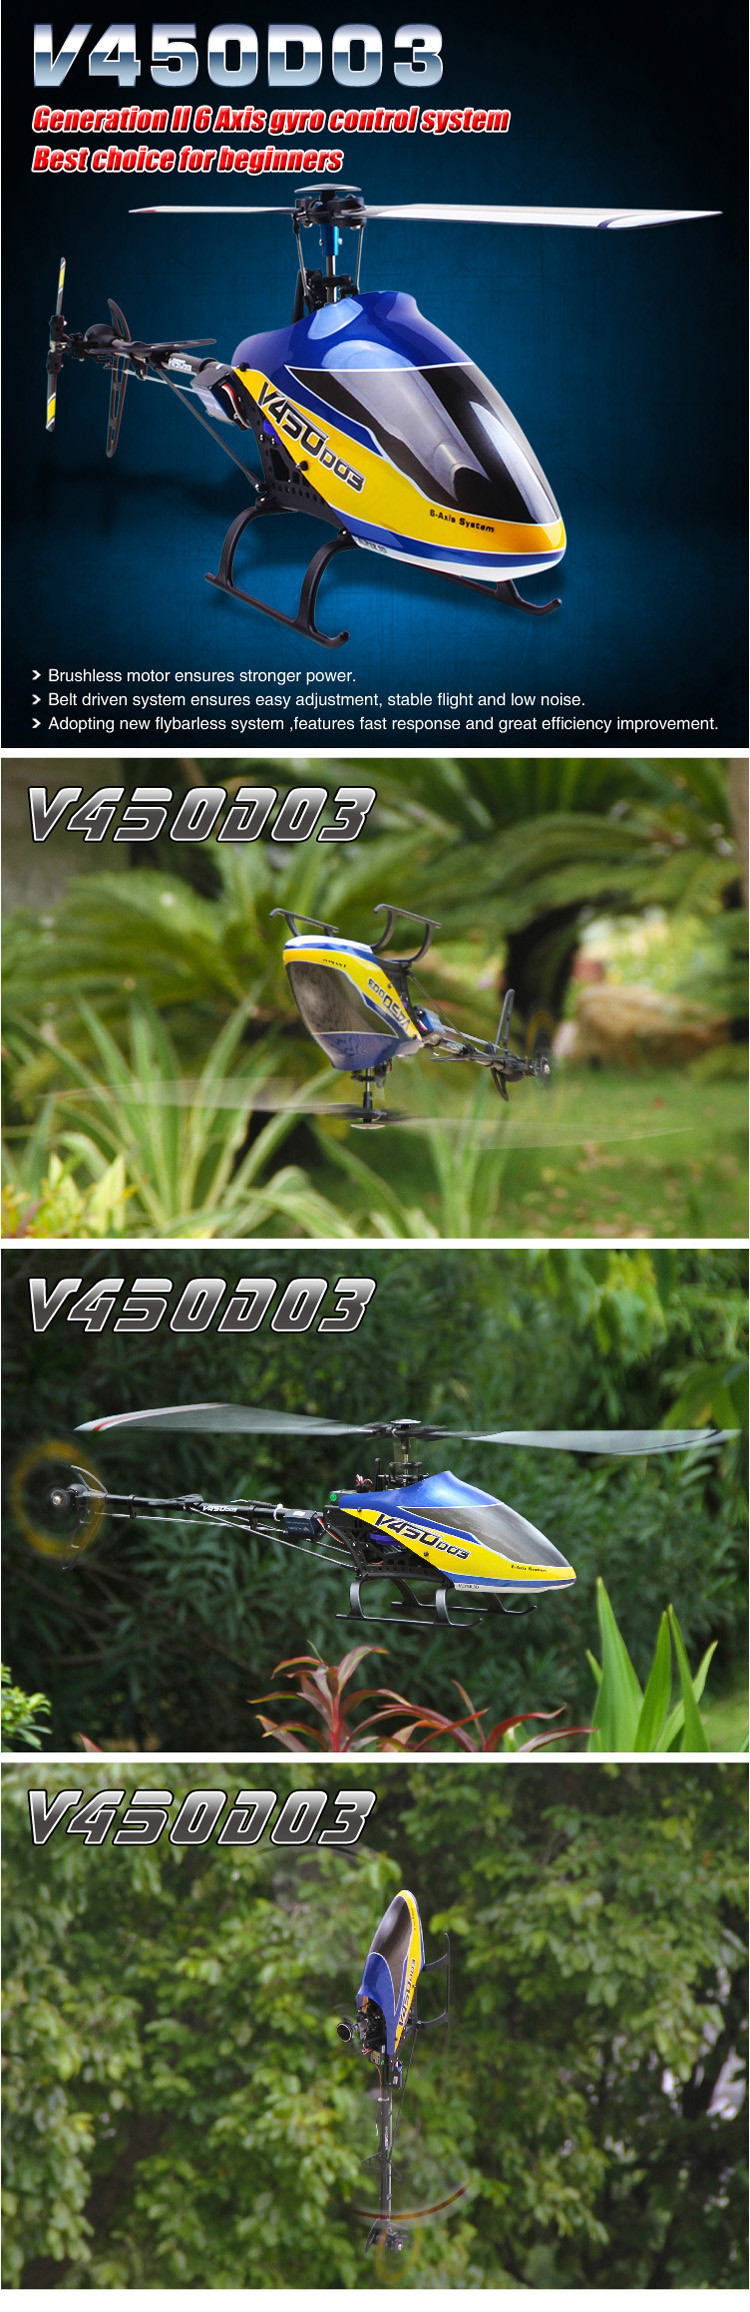 Walkera V450D03 DEVO 7送信機フルセット 6CH 3D 6軸ジャイロ ブラシレス RC ヘリコプター RTF 2.4GHz